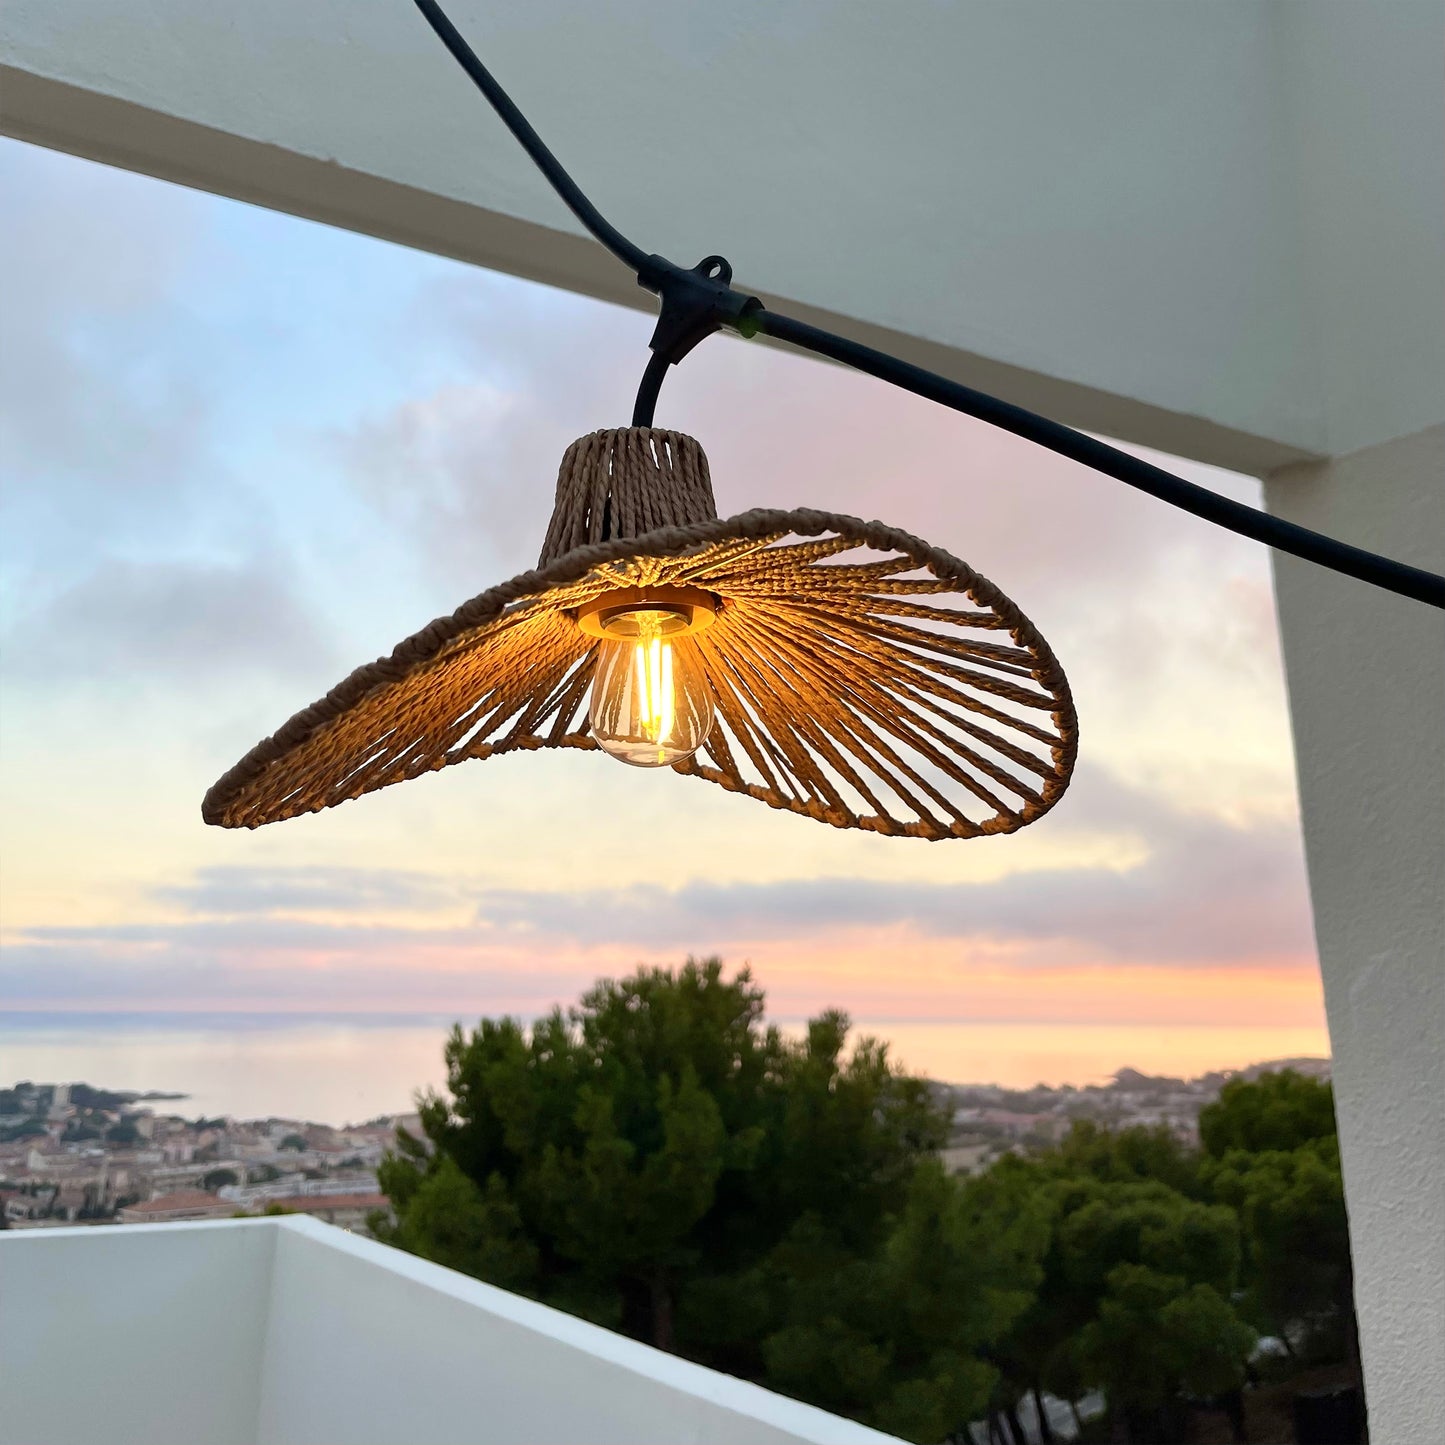 Guirlande lumineuse raccordable d'extérieur avec abat-jour en corde naturelle style bohème 7 ampoules à filament douille E27 LED blanc chaud WAVY LIGHT 6m